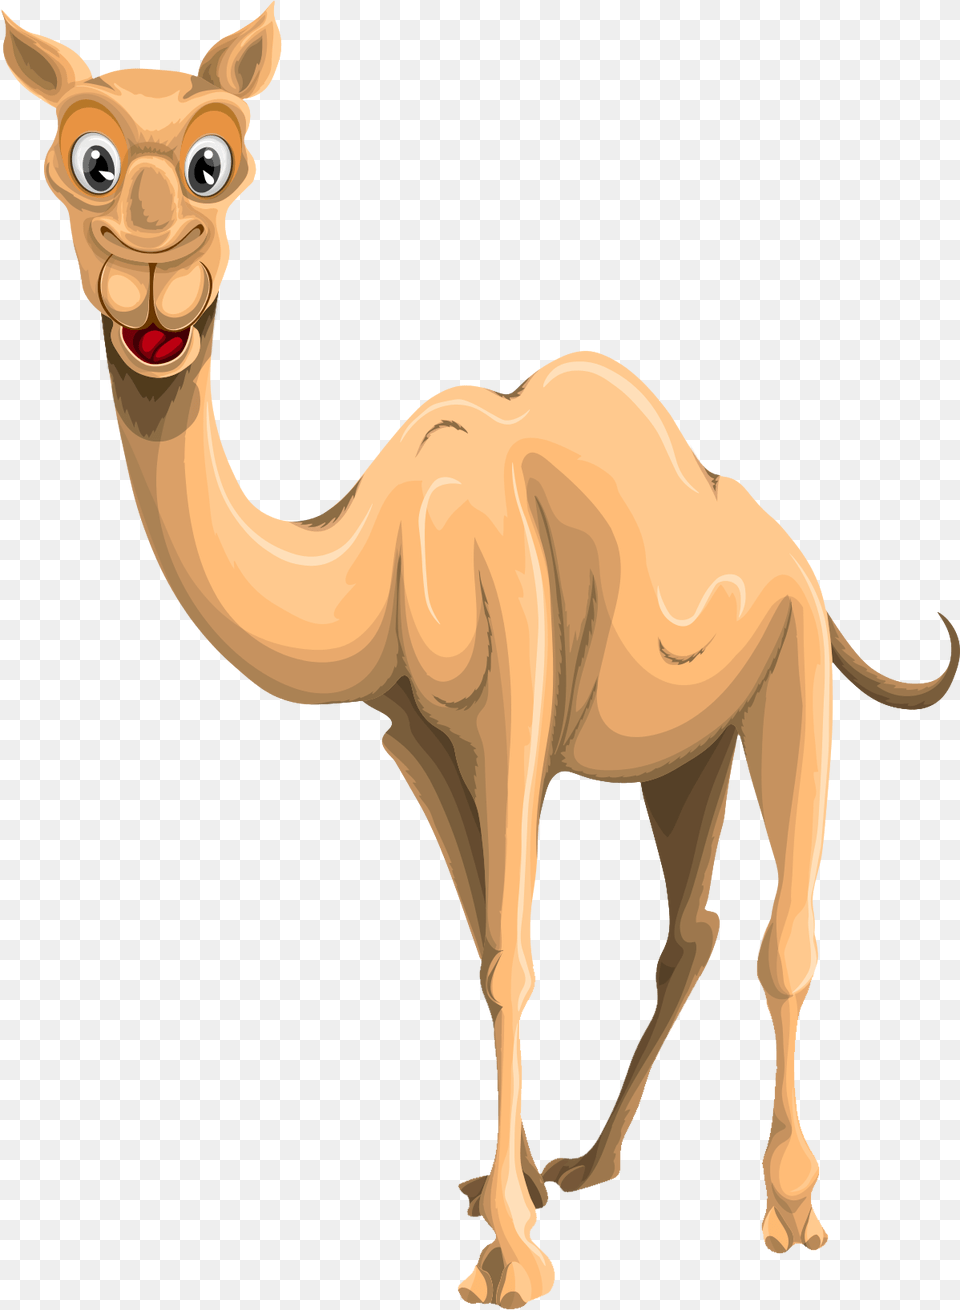 Camel Images Camel Image Background, Animal, Mammal, Kangaroo Free Transparent Png